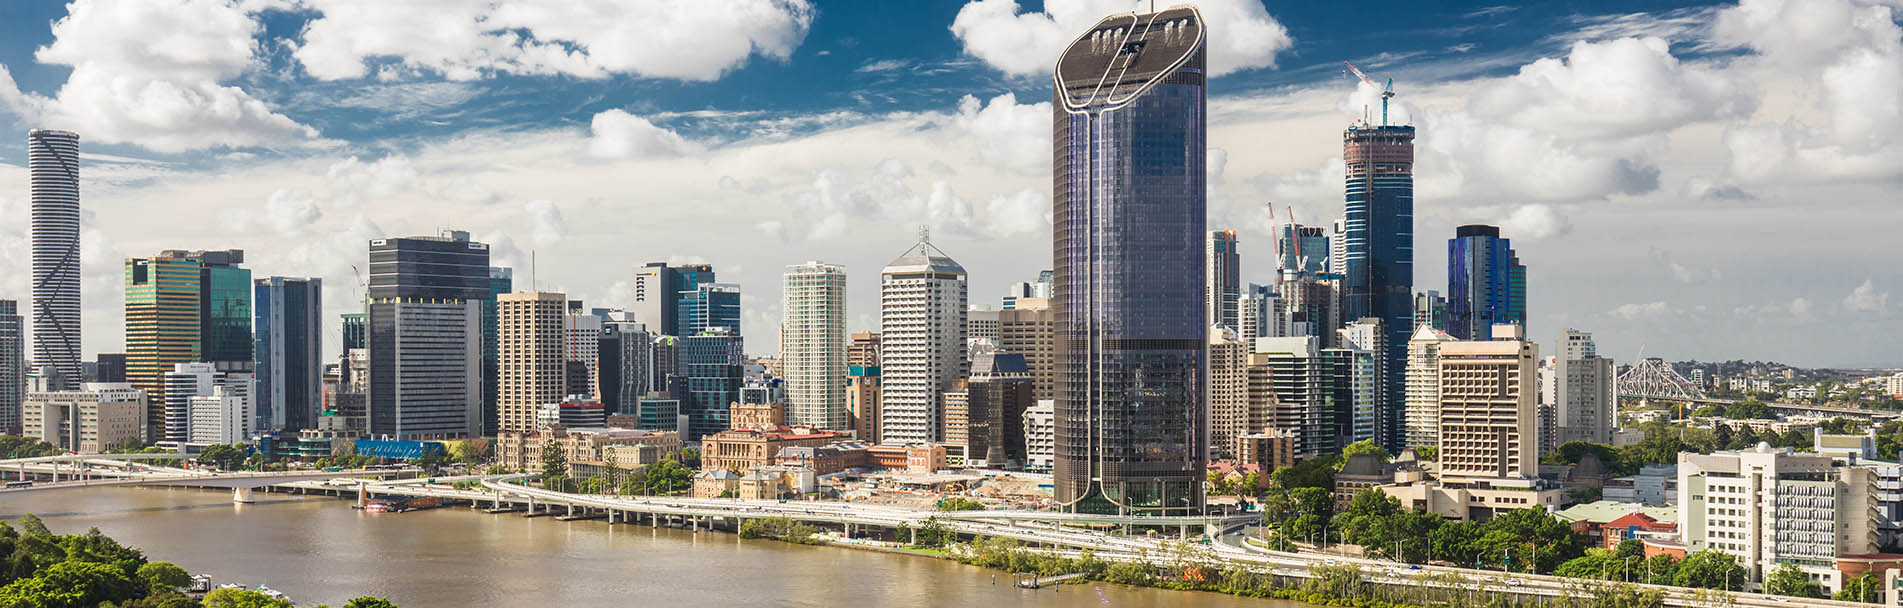 Panorama of Brisbane City Riverside buildings